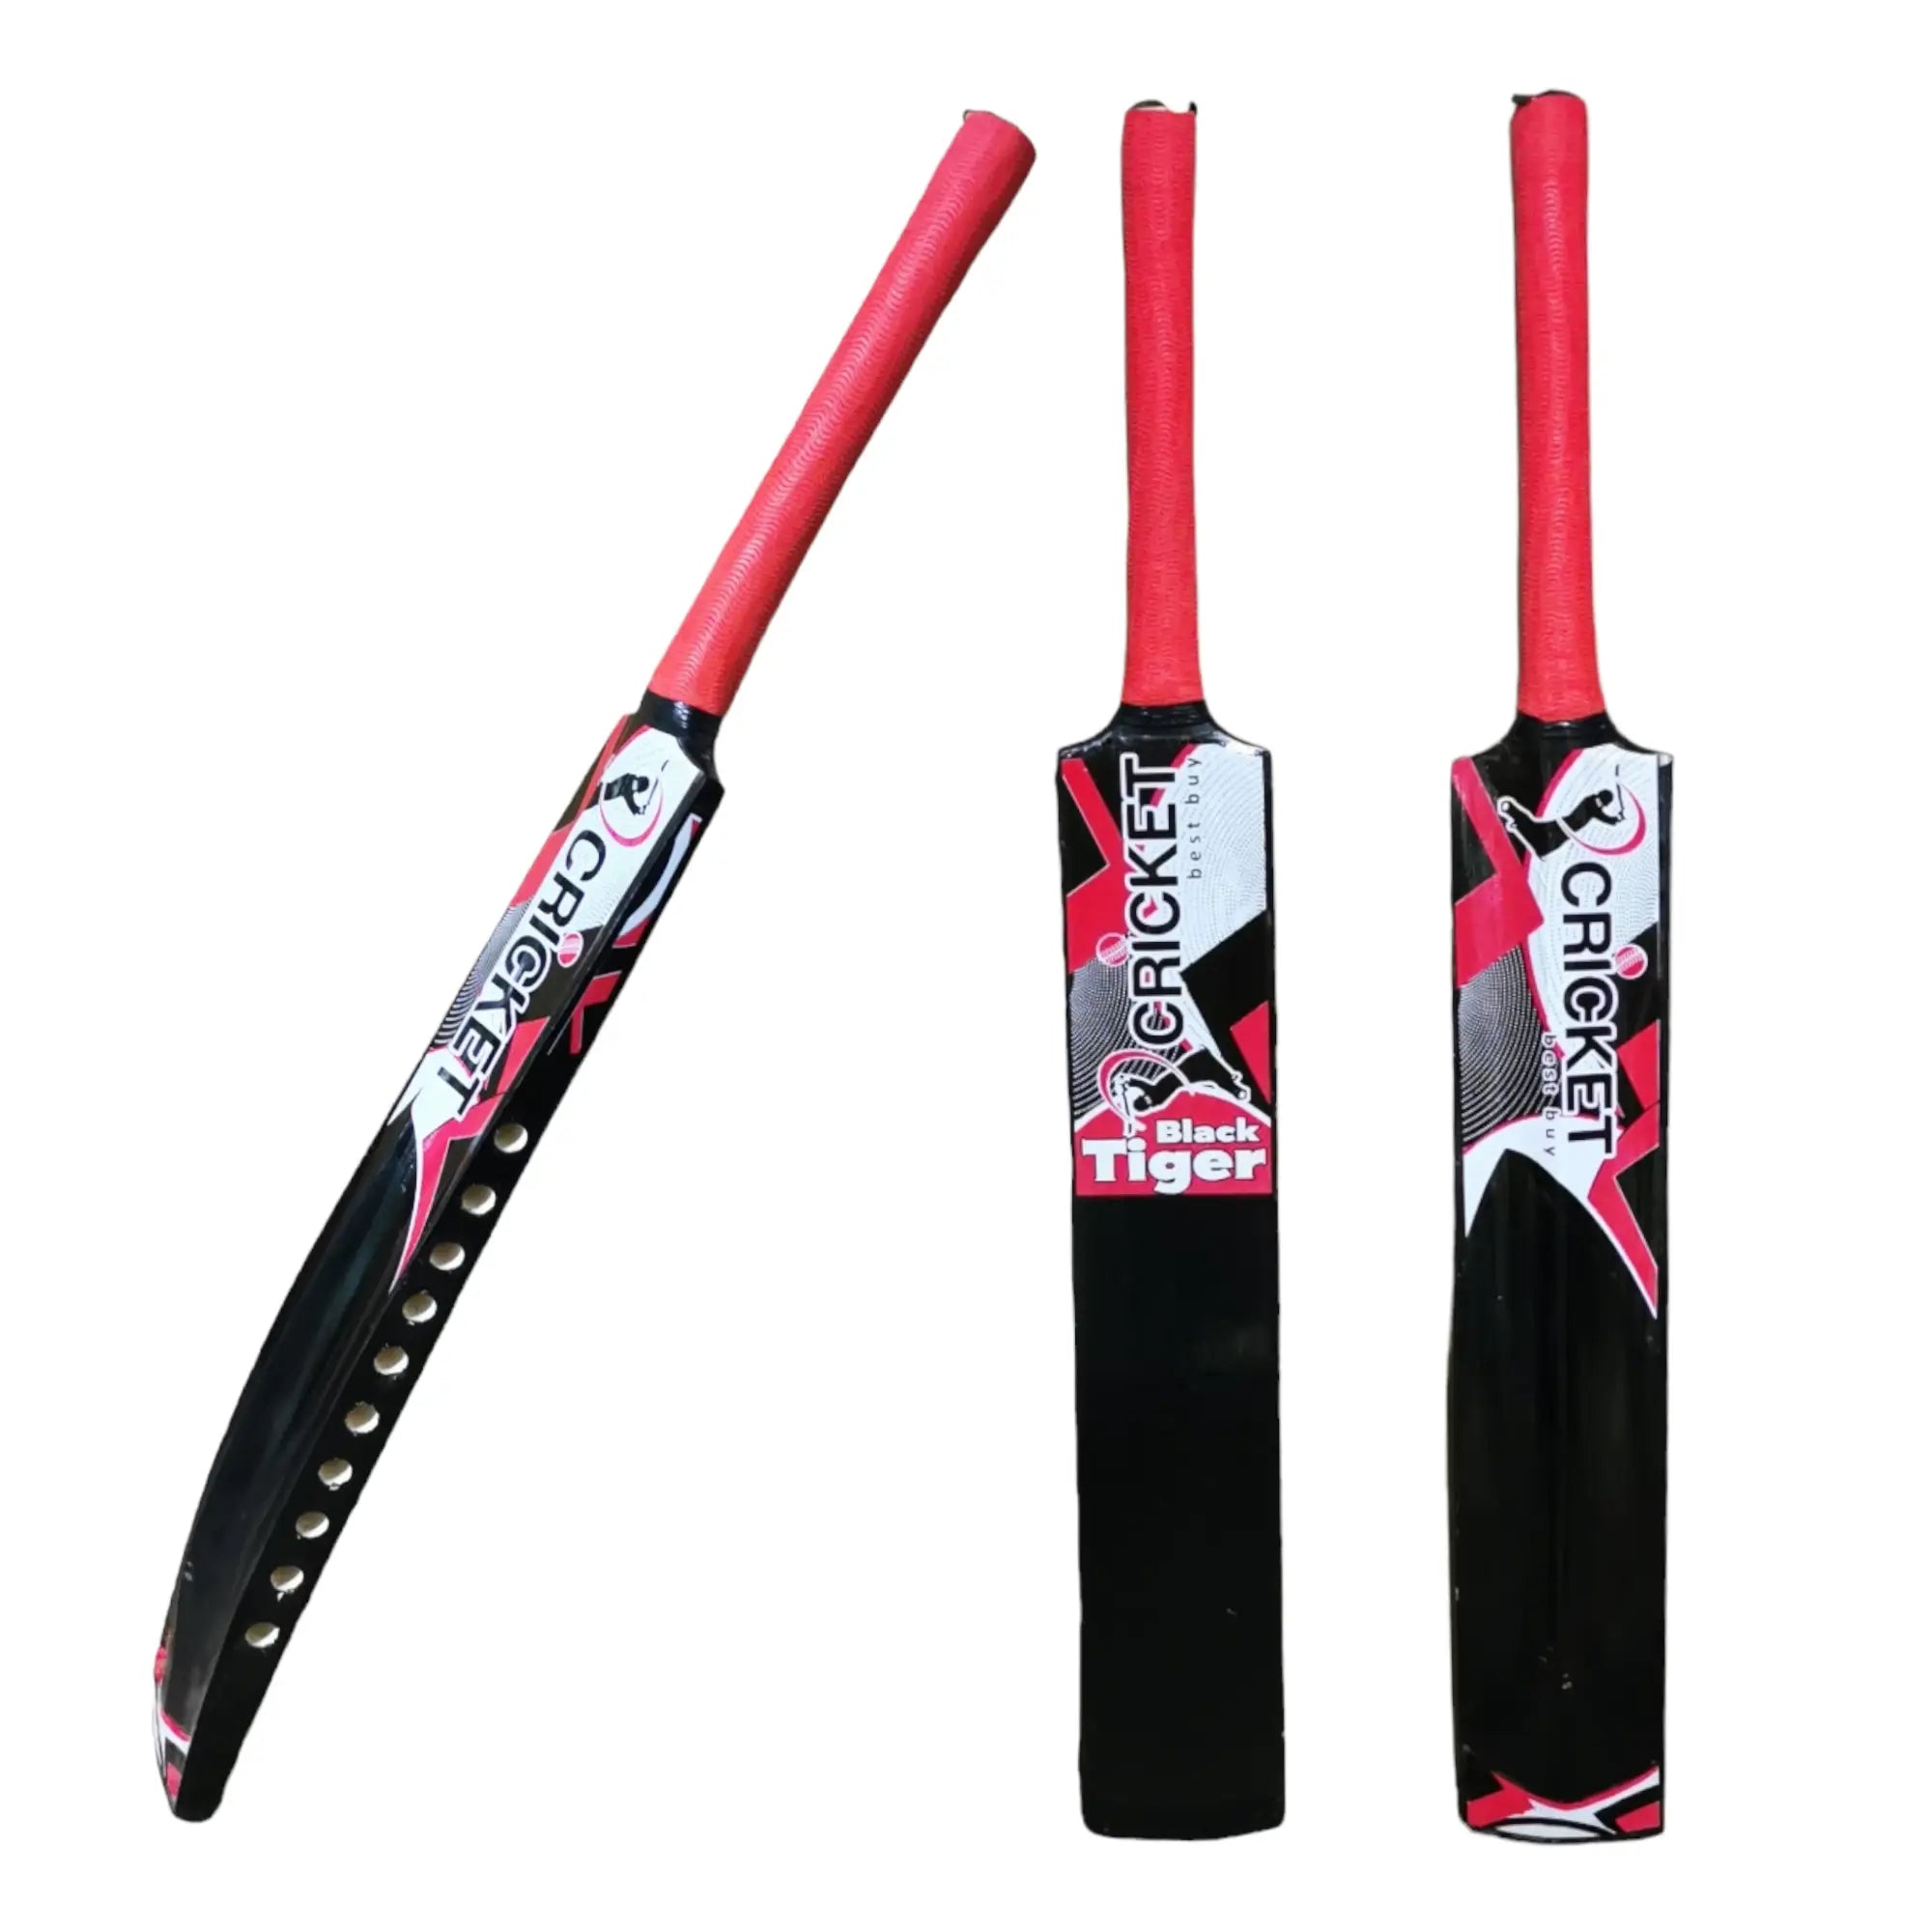 CBB Black Tiger Cricket Bat For Tape Tennis Softball Lightweight Men - BATS - SOFTBALL